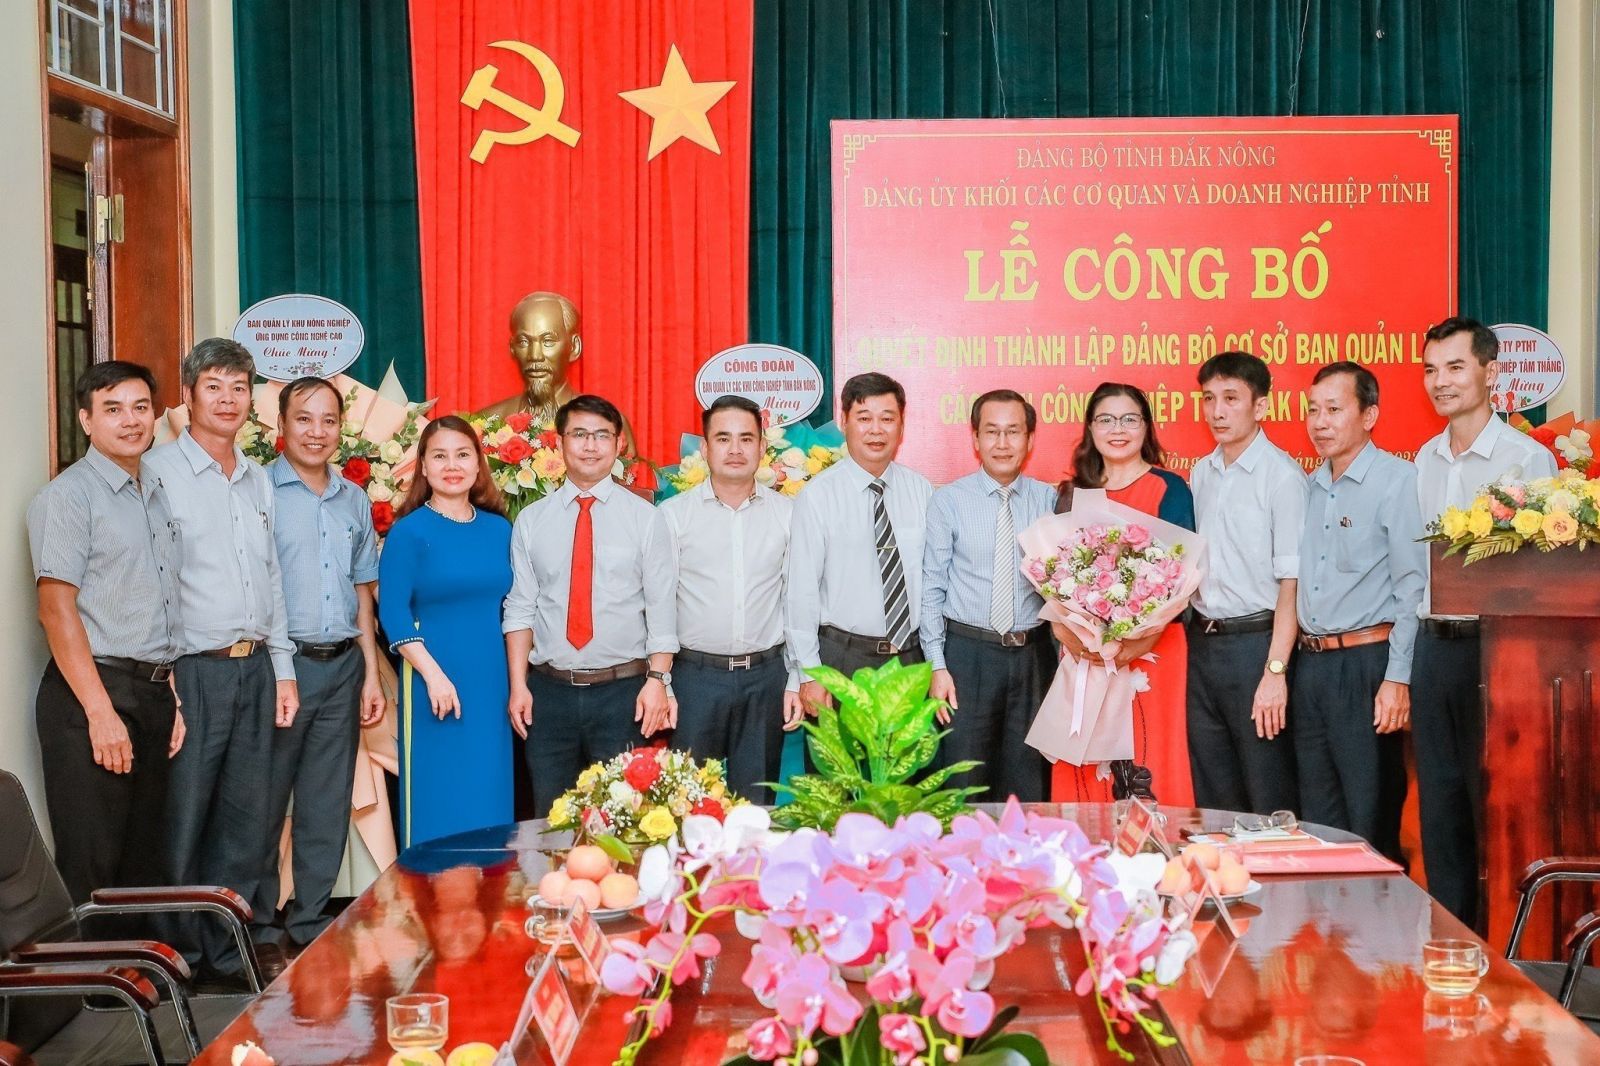 Lễ công bố Quyết định thành lập Đảng bộ Ban quản lý các khu công nghiệp tỉnh Đắk Nông